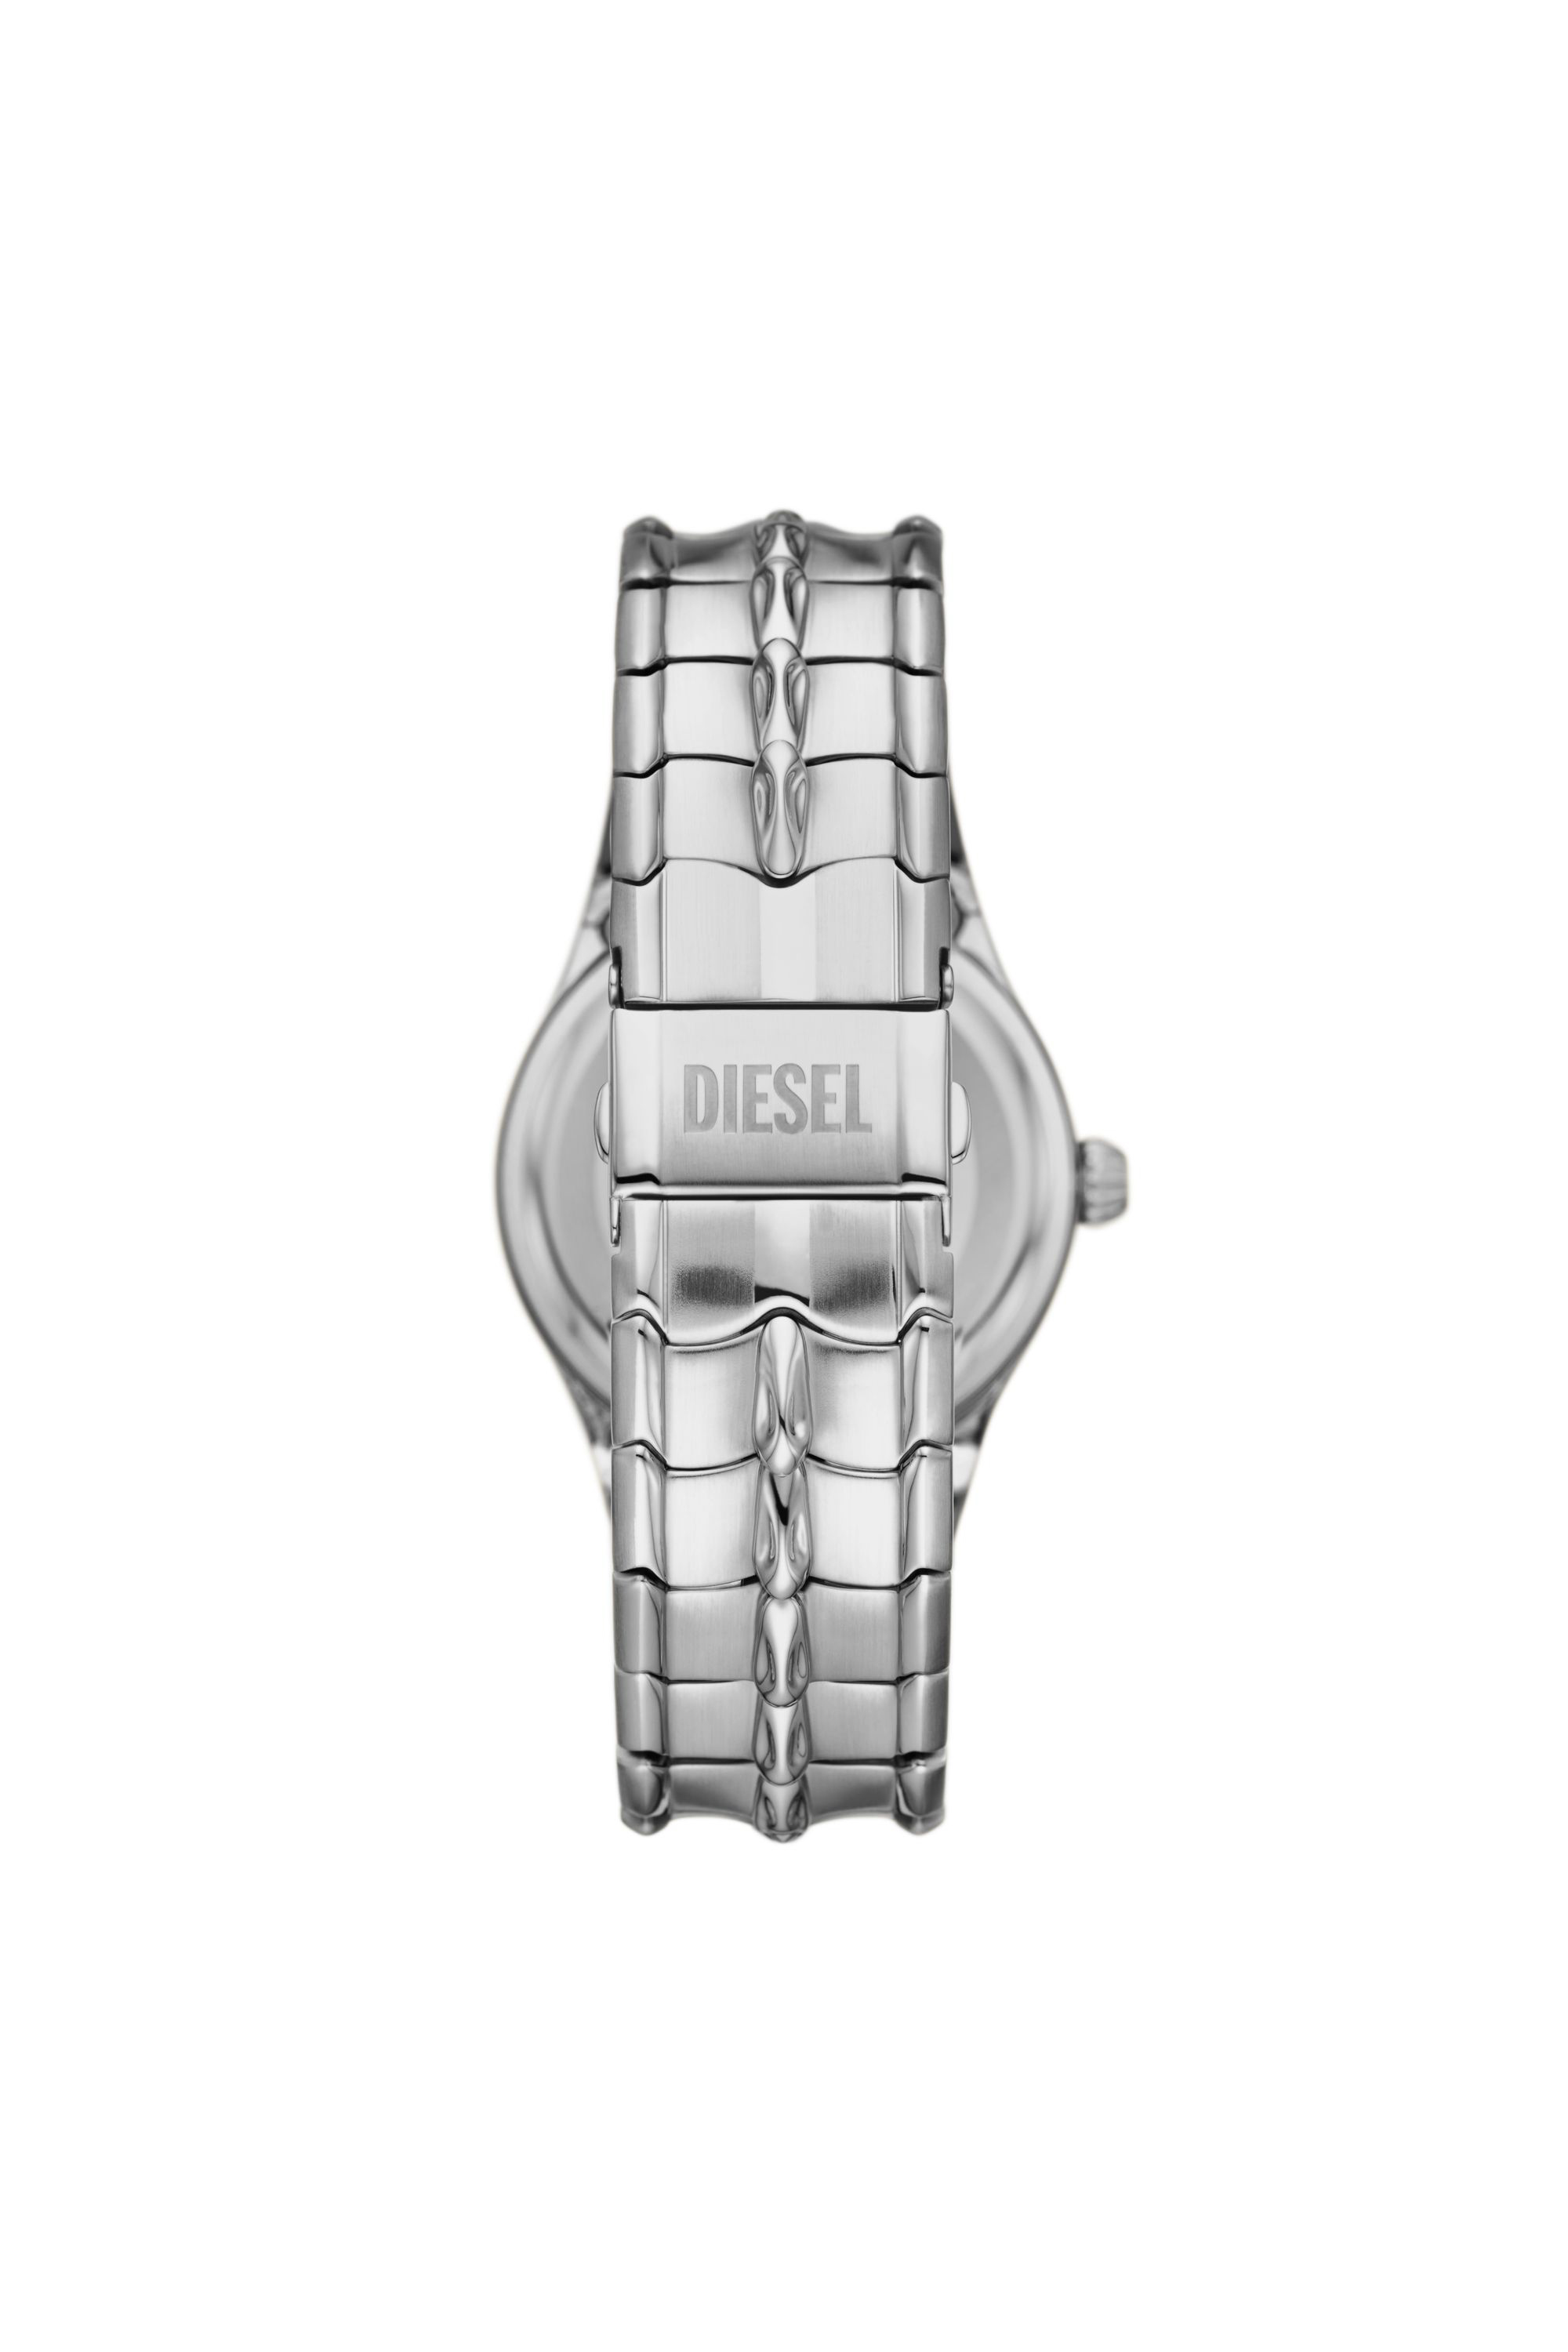 Diesel - DZ2185, Silver - Image 3